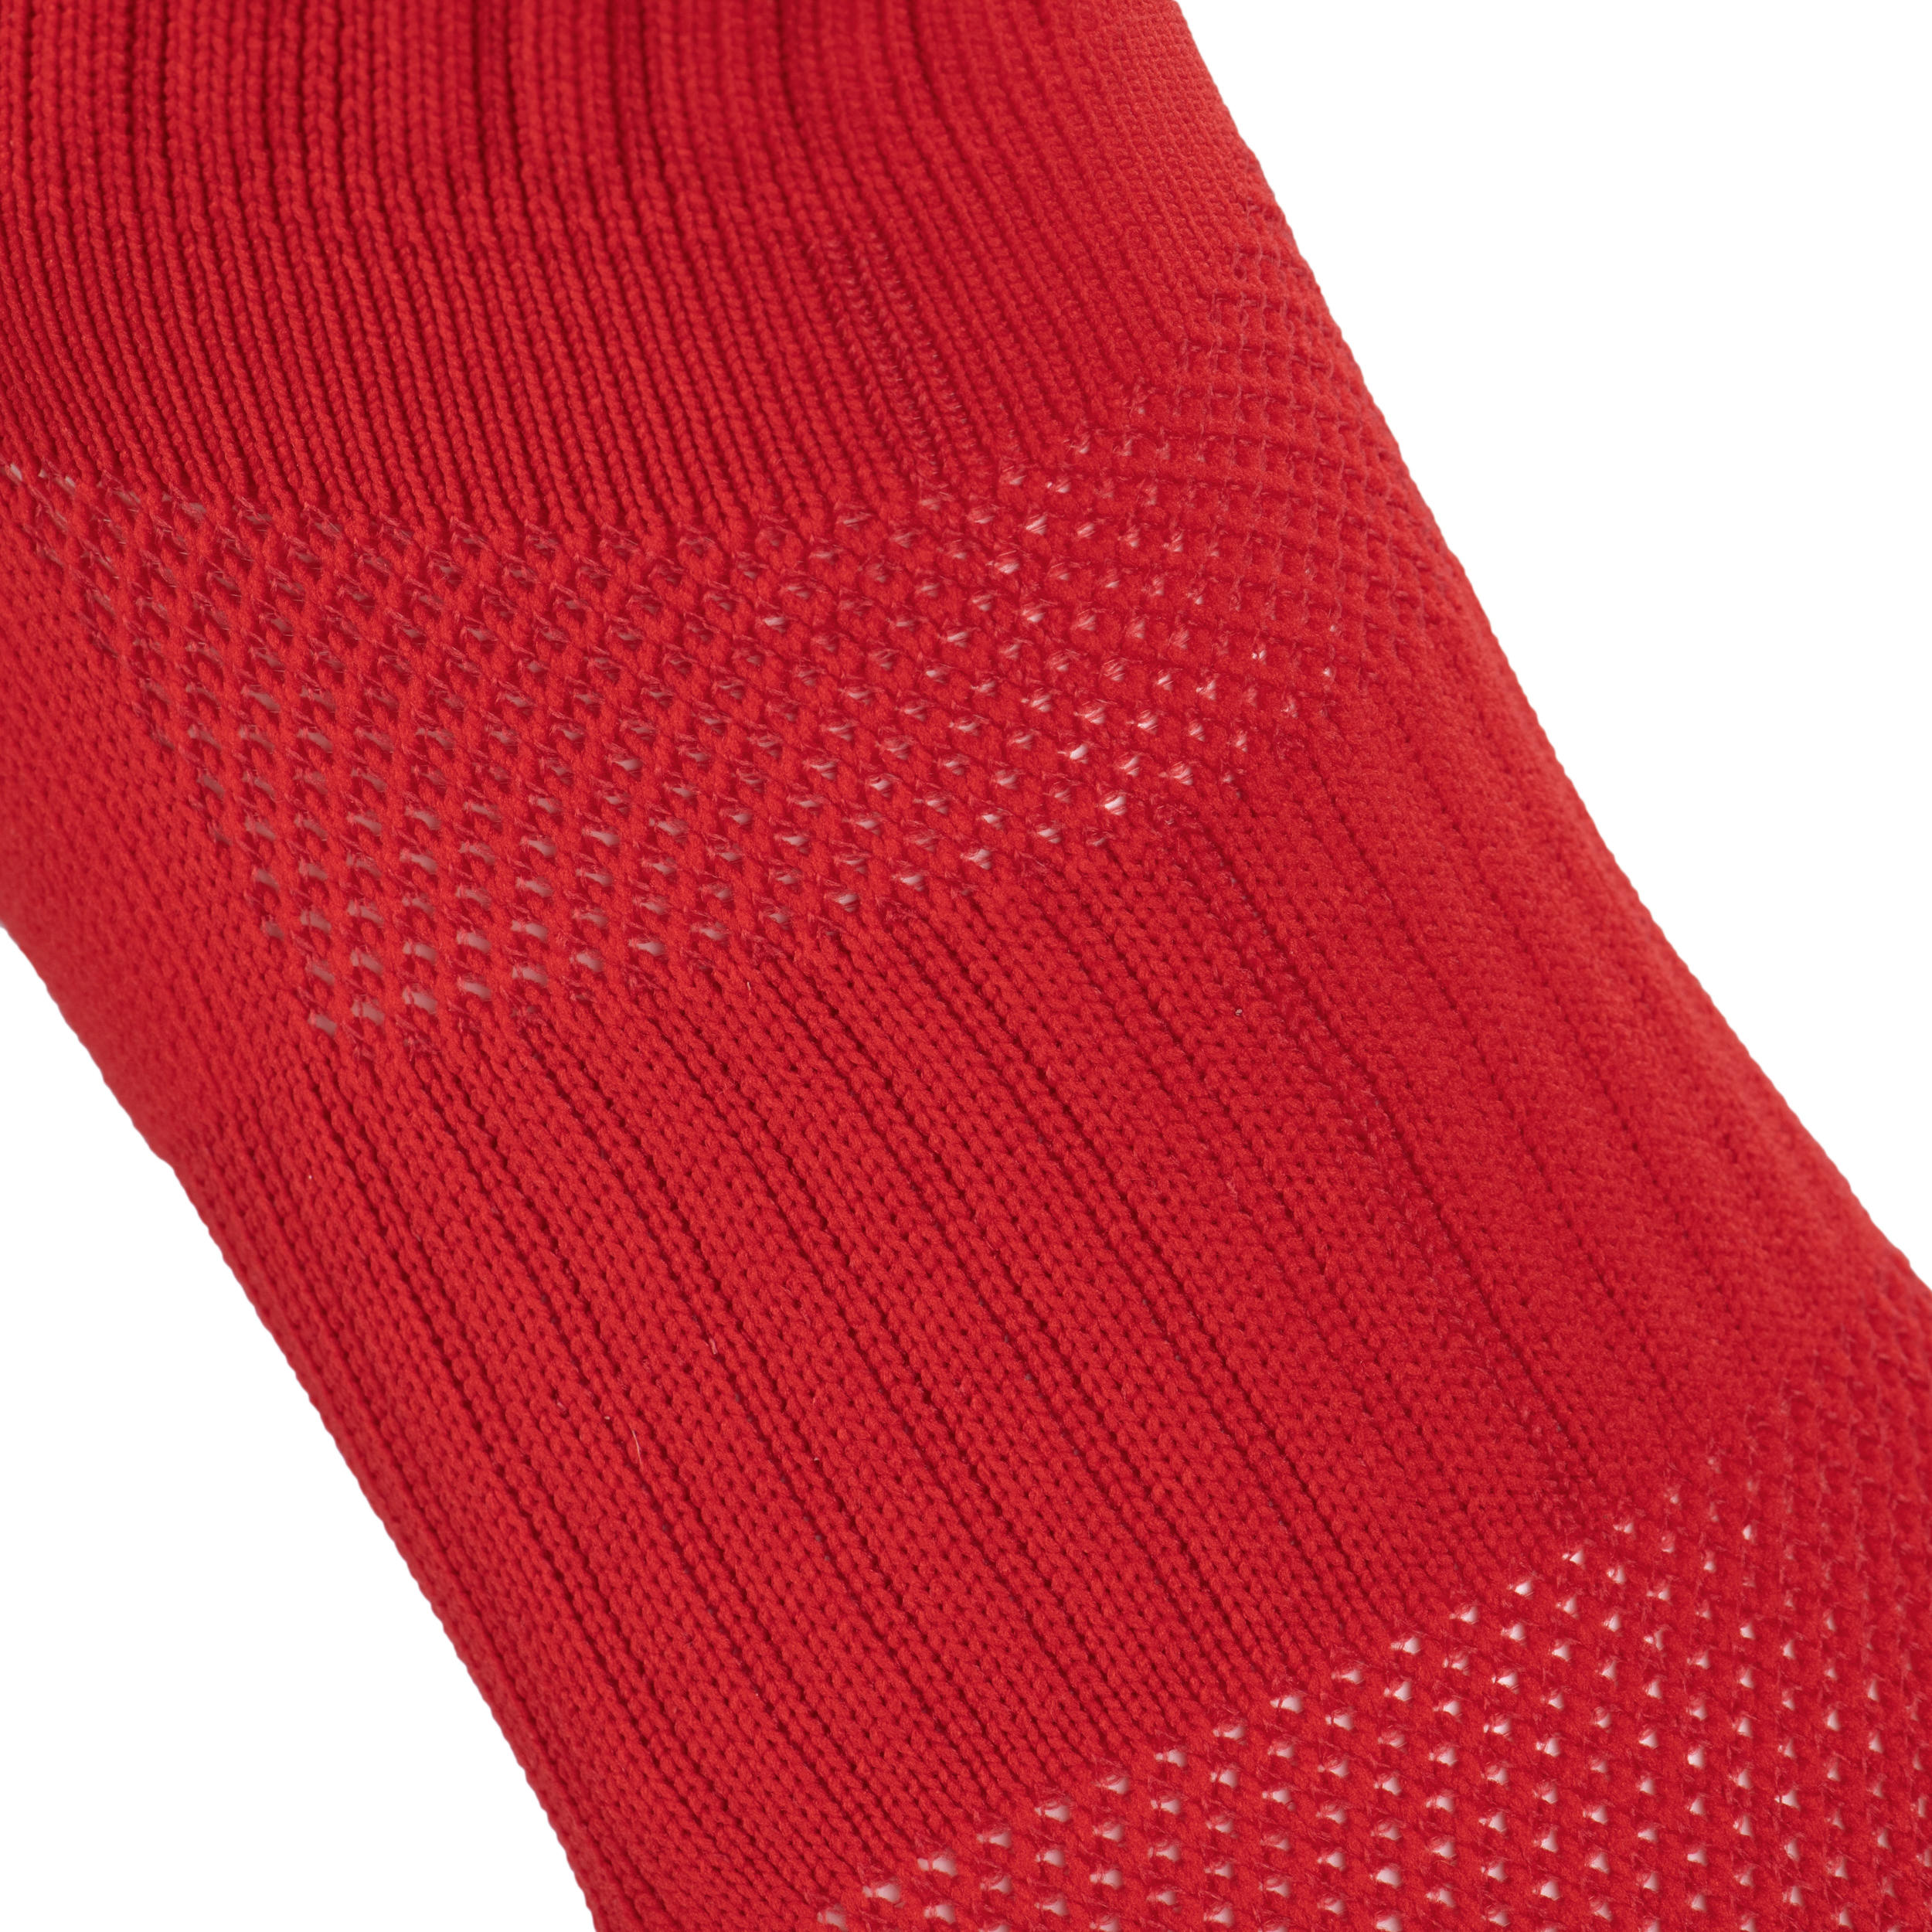 Men's/Women's High Rugby Socks R500 - Red/White 5/5